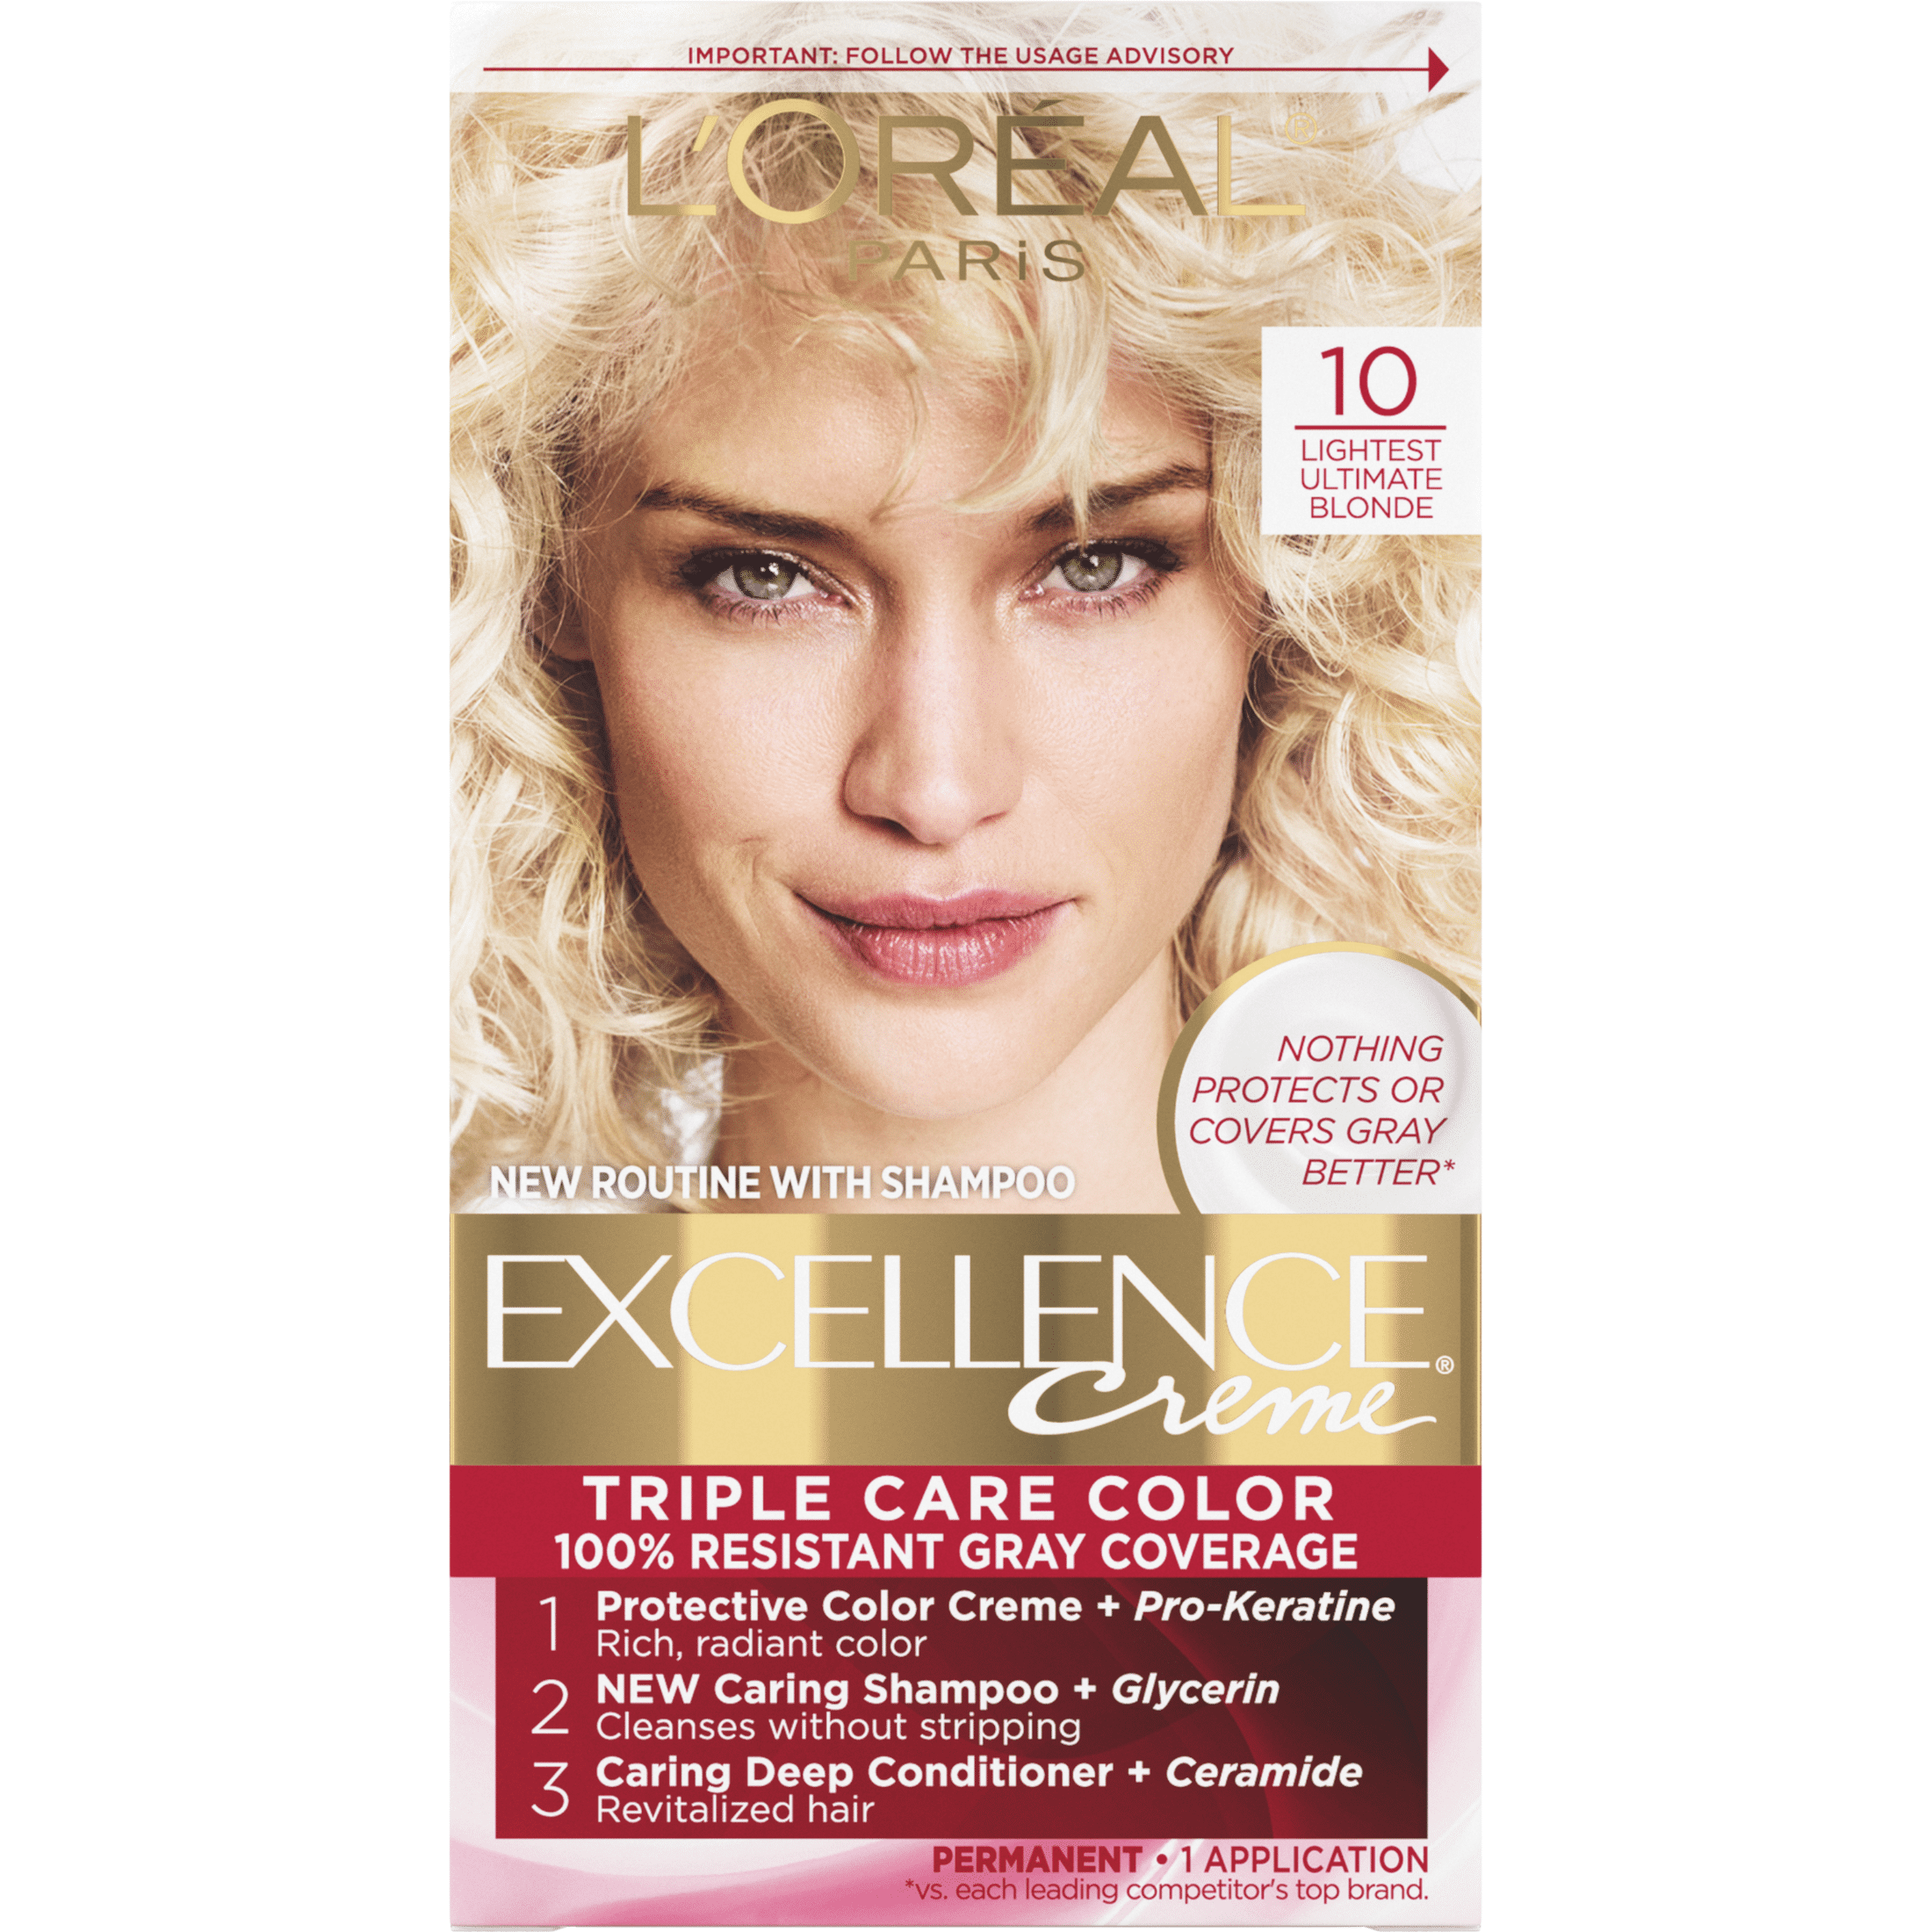 L'Oreal Paris Excellence Creme Permanent Hair Color, 10 Lightest ...